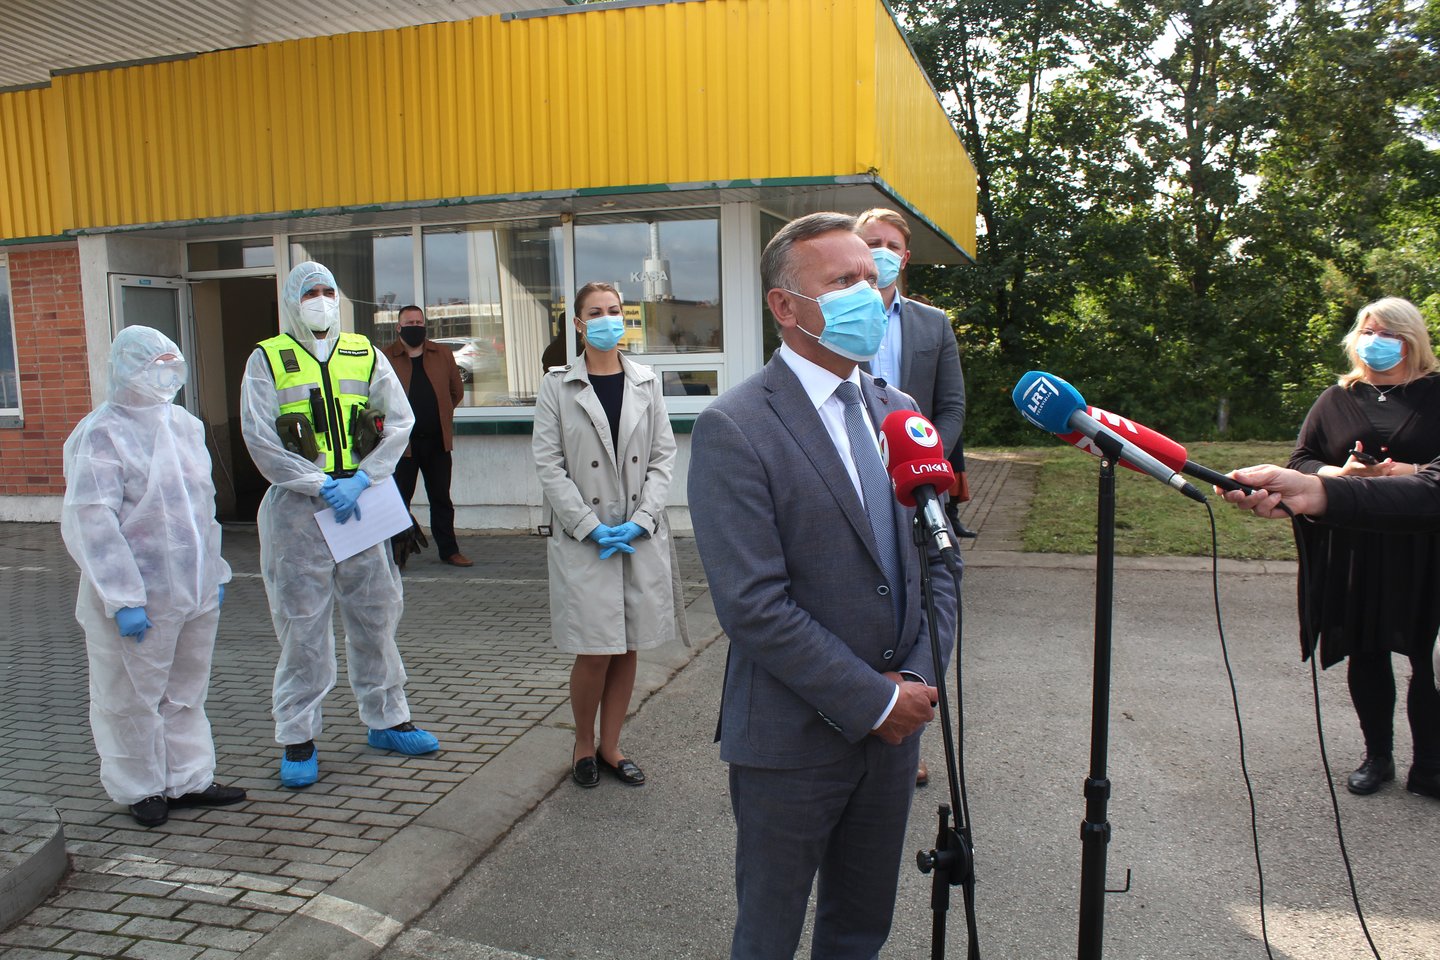 Mobiliojo COVID-19 patikros punkto atidaryme dalyvavęs Radviliškio rajono meras A.Čepononis ramino, kad Radviliškyje infekcijos protrūkis yra lokalizuotas, bet kvietė visus neatsipalaiduoti ir laikytis patvirtintų taisyklių.<br> R.Vitkaus nuotr.